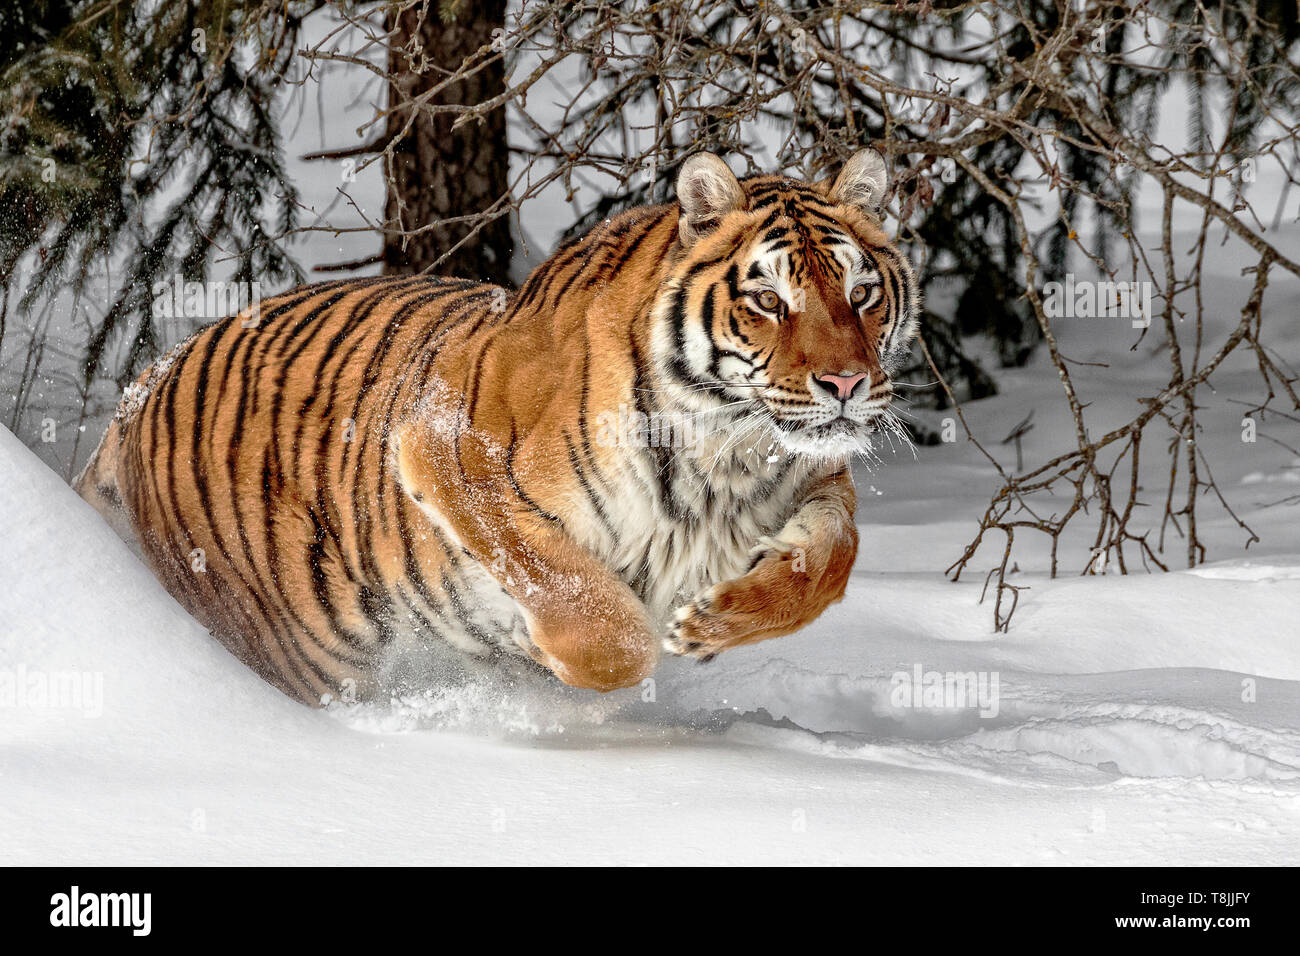 El tigre siberiano es el más grande de los grandes felinos y puede pesar hasta 670 libras. En el medio silvestre, su peso suele ser tanto como 500 libras. Foto de stock